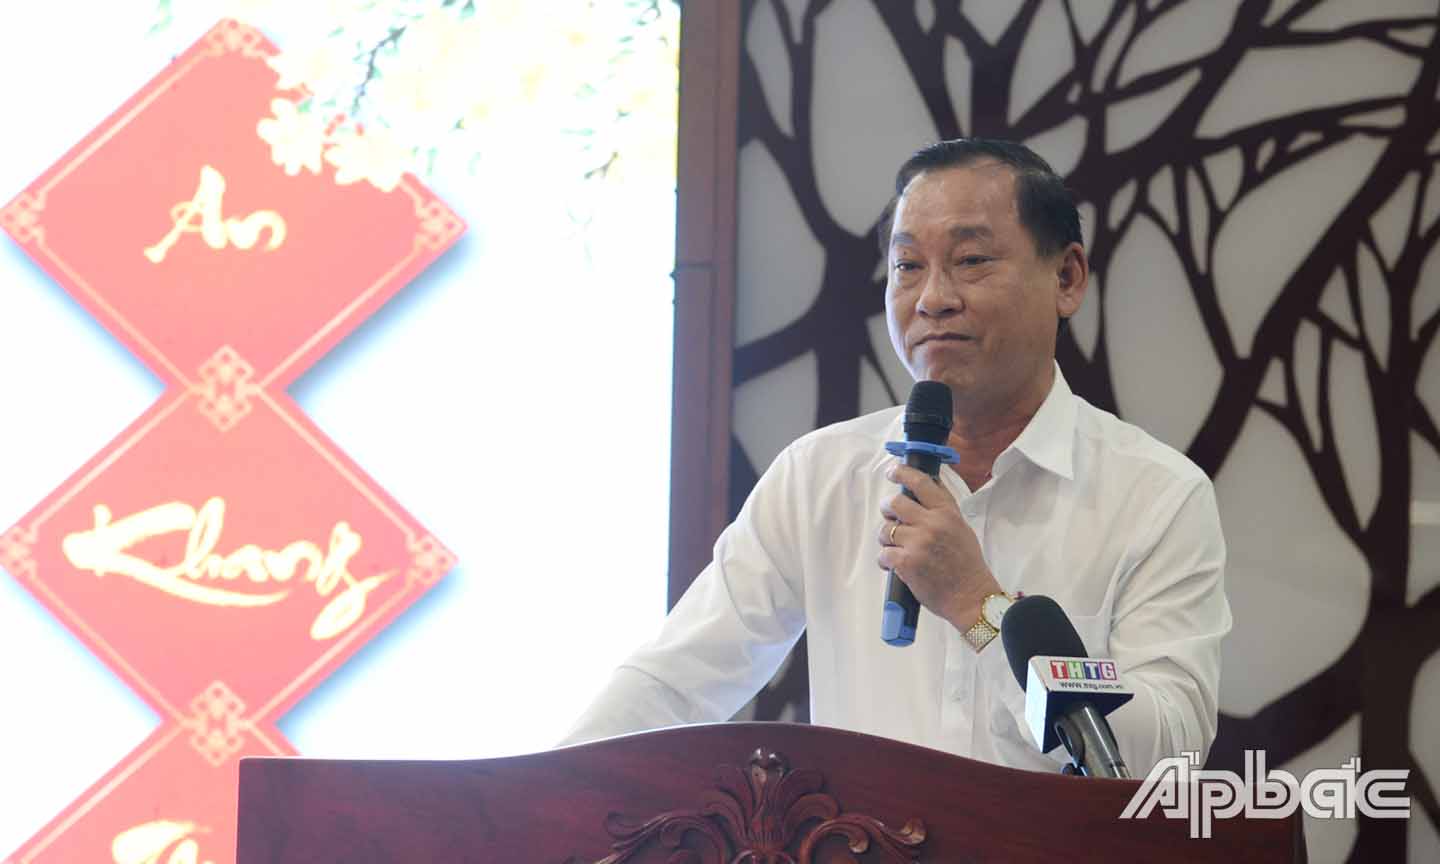 Đồng chí Nguyễn Văn Vĩnh phát biểu tại buổi họp mặt.